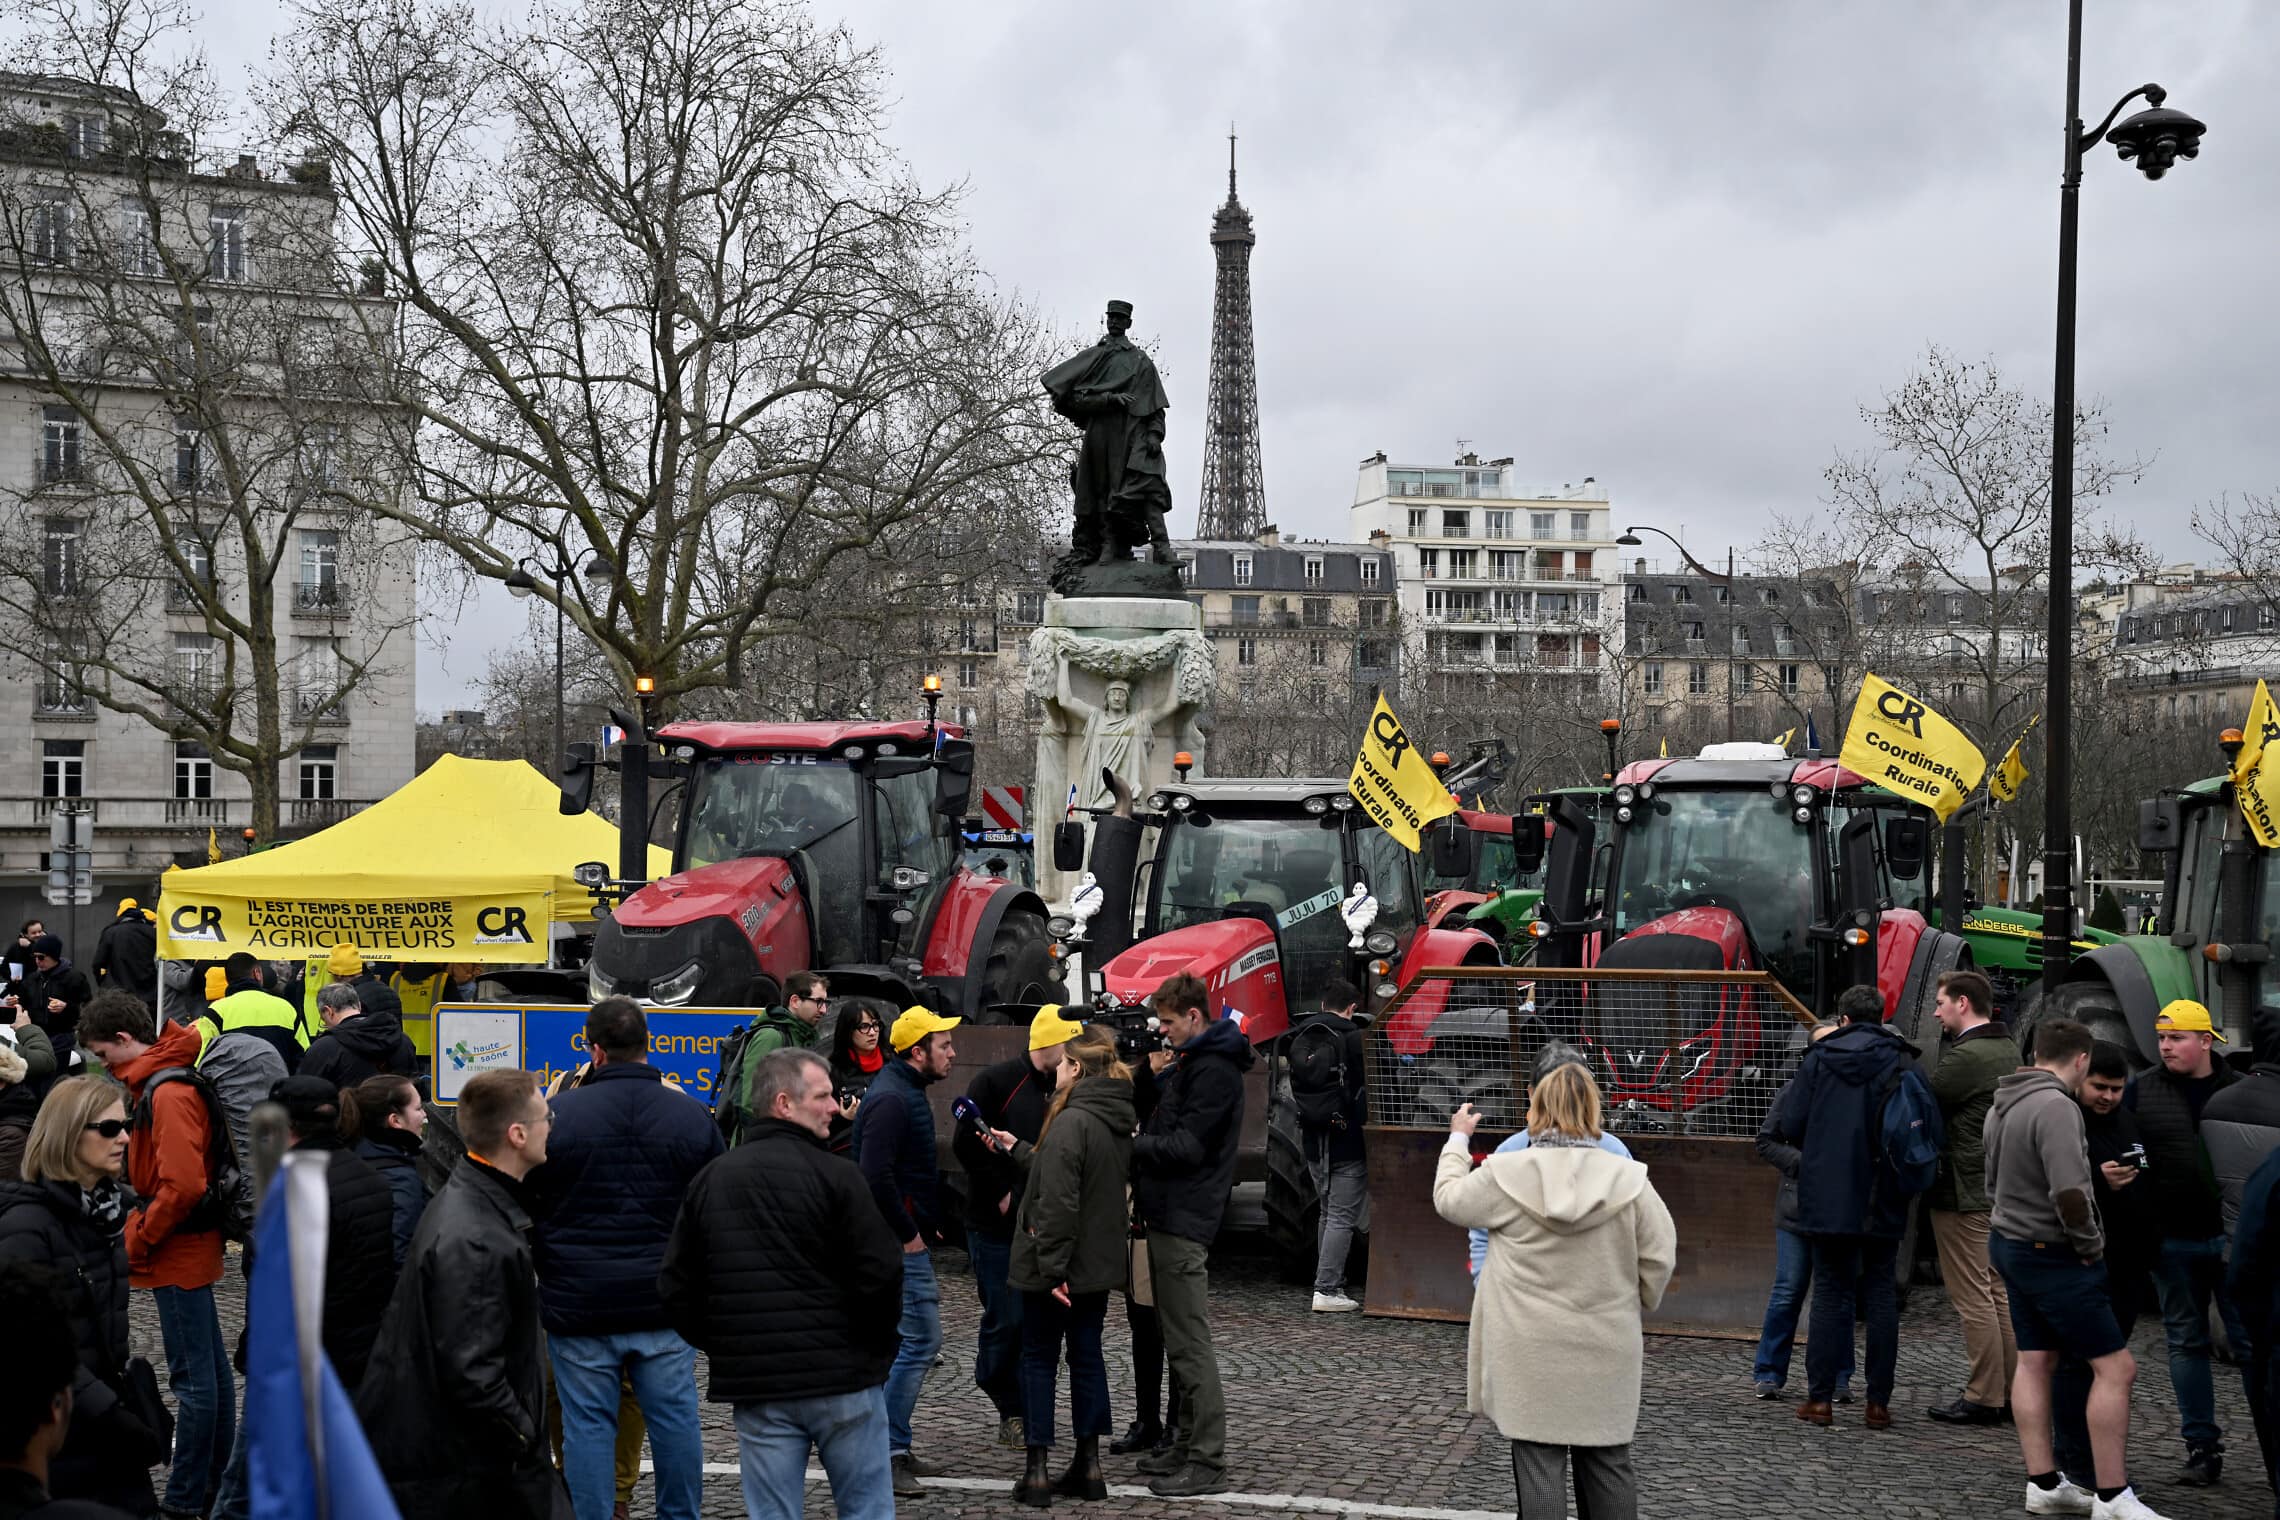 הפגנה בפריז של האיגוד החקלאי Coordination Rurale, לקראת פתיחת יריד החקלאות הבינלאומי ה-60, מגדל אייפל ברקע, ב- 23 בפברואר 2024 (צילום: Miguel MEDINA / AFP)